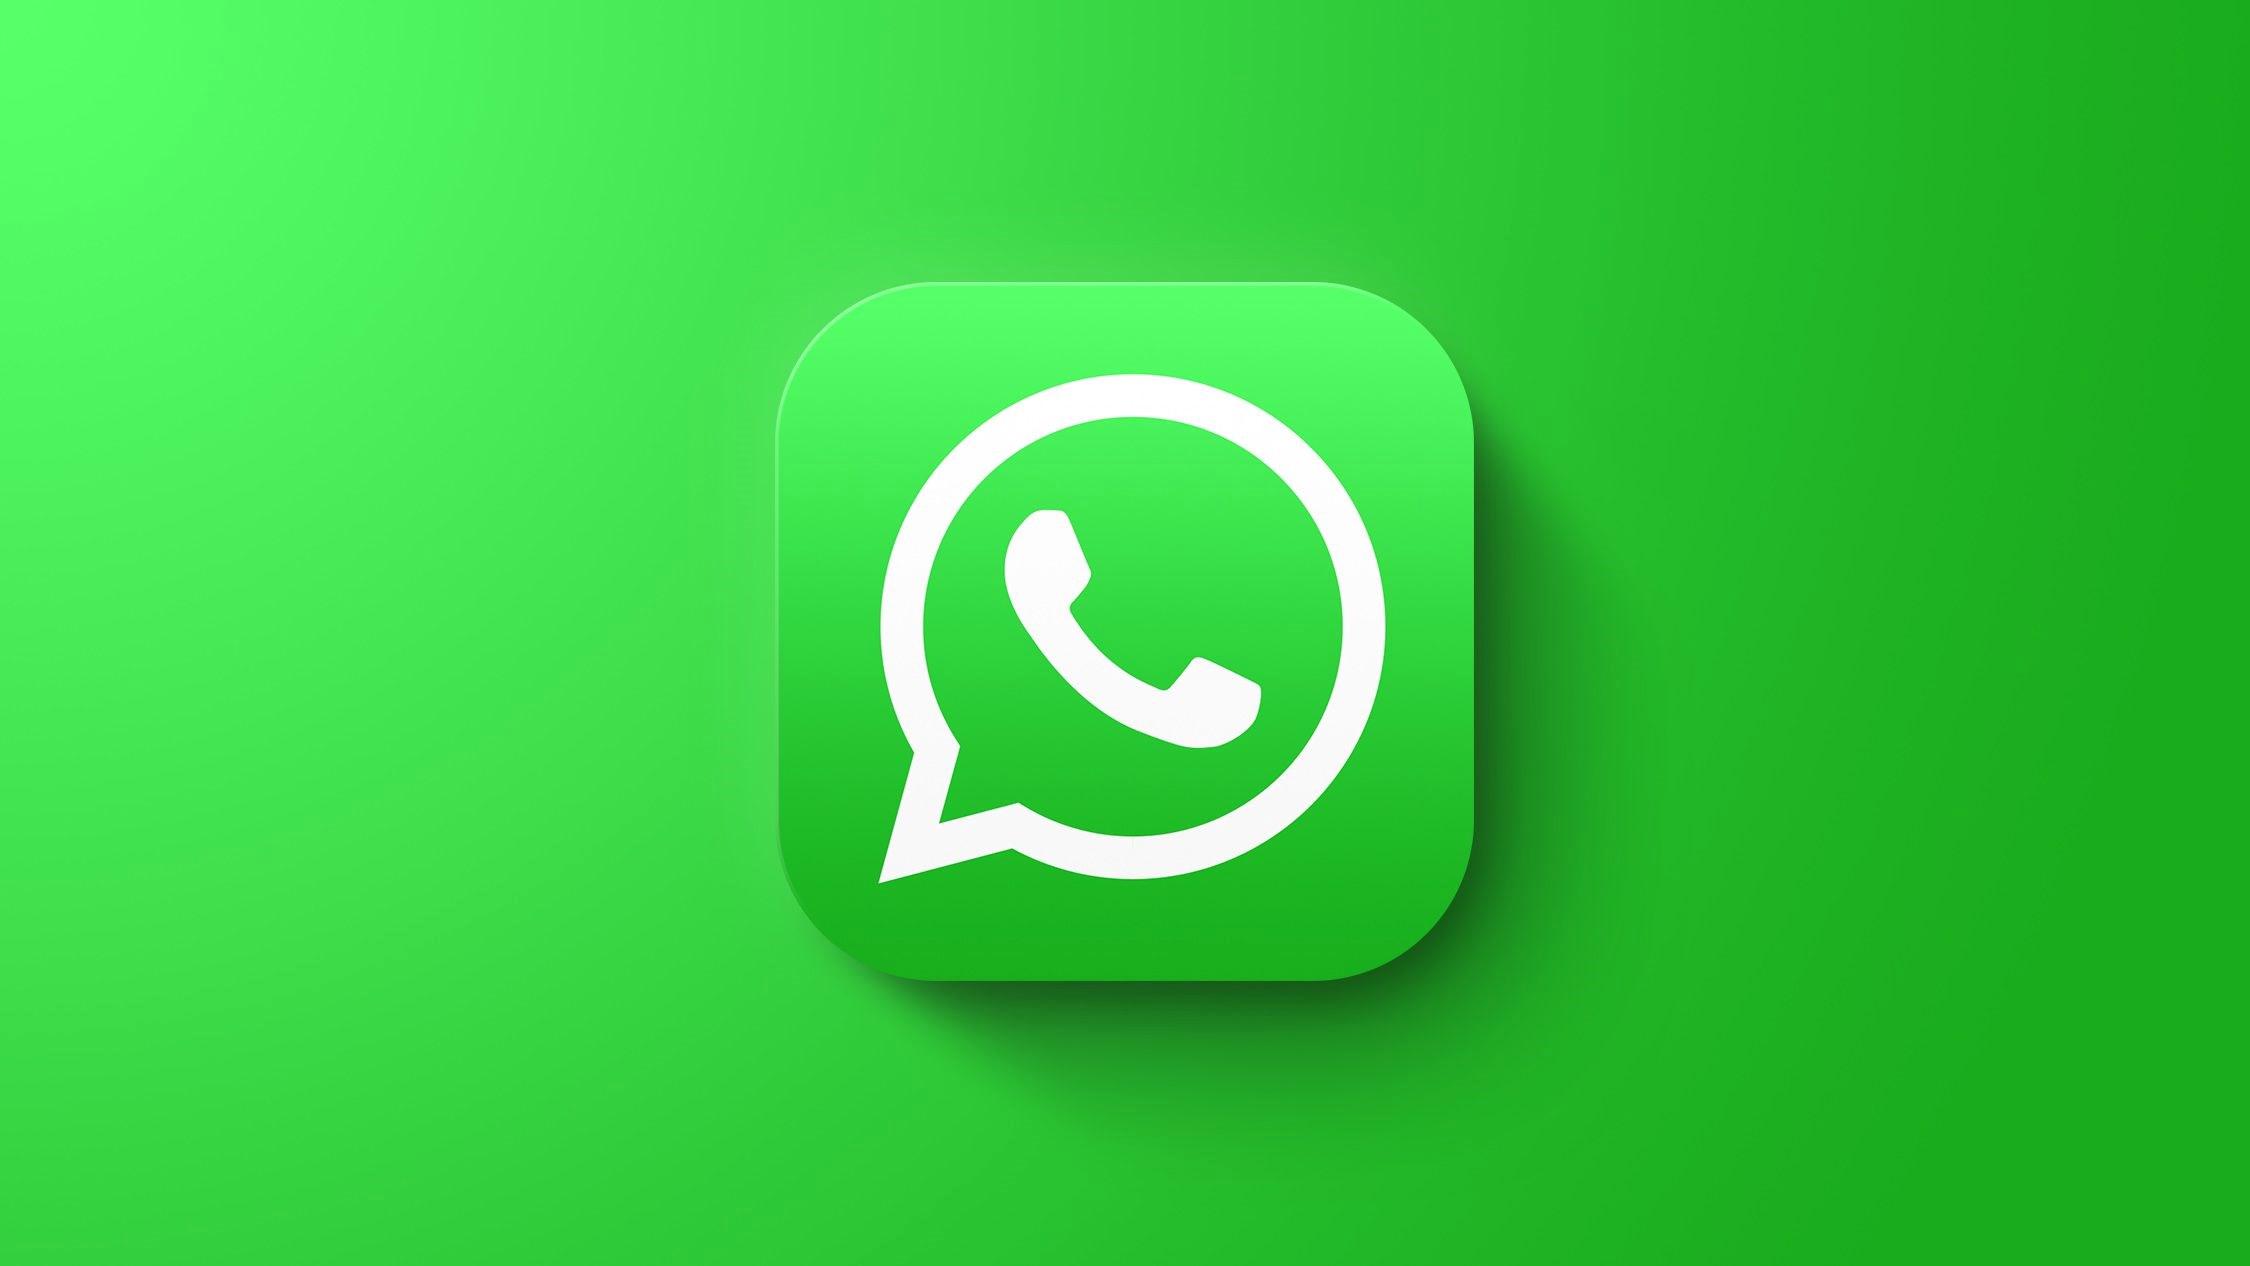 WhatsApp’ta artık isimsiz grup kurulabiliyor